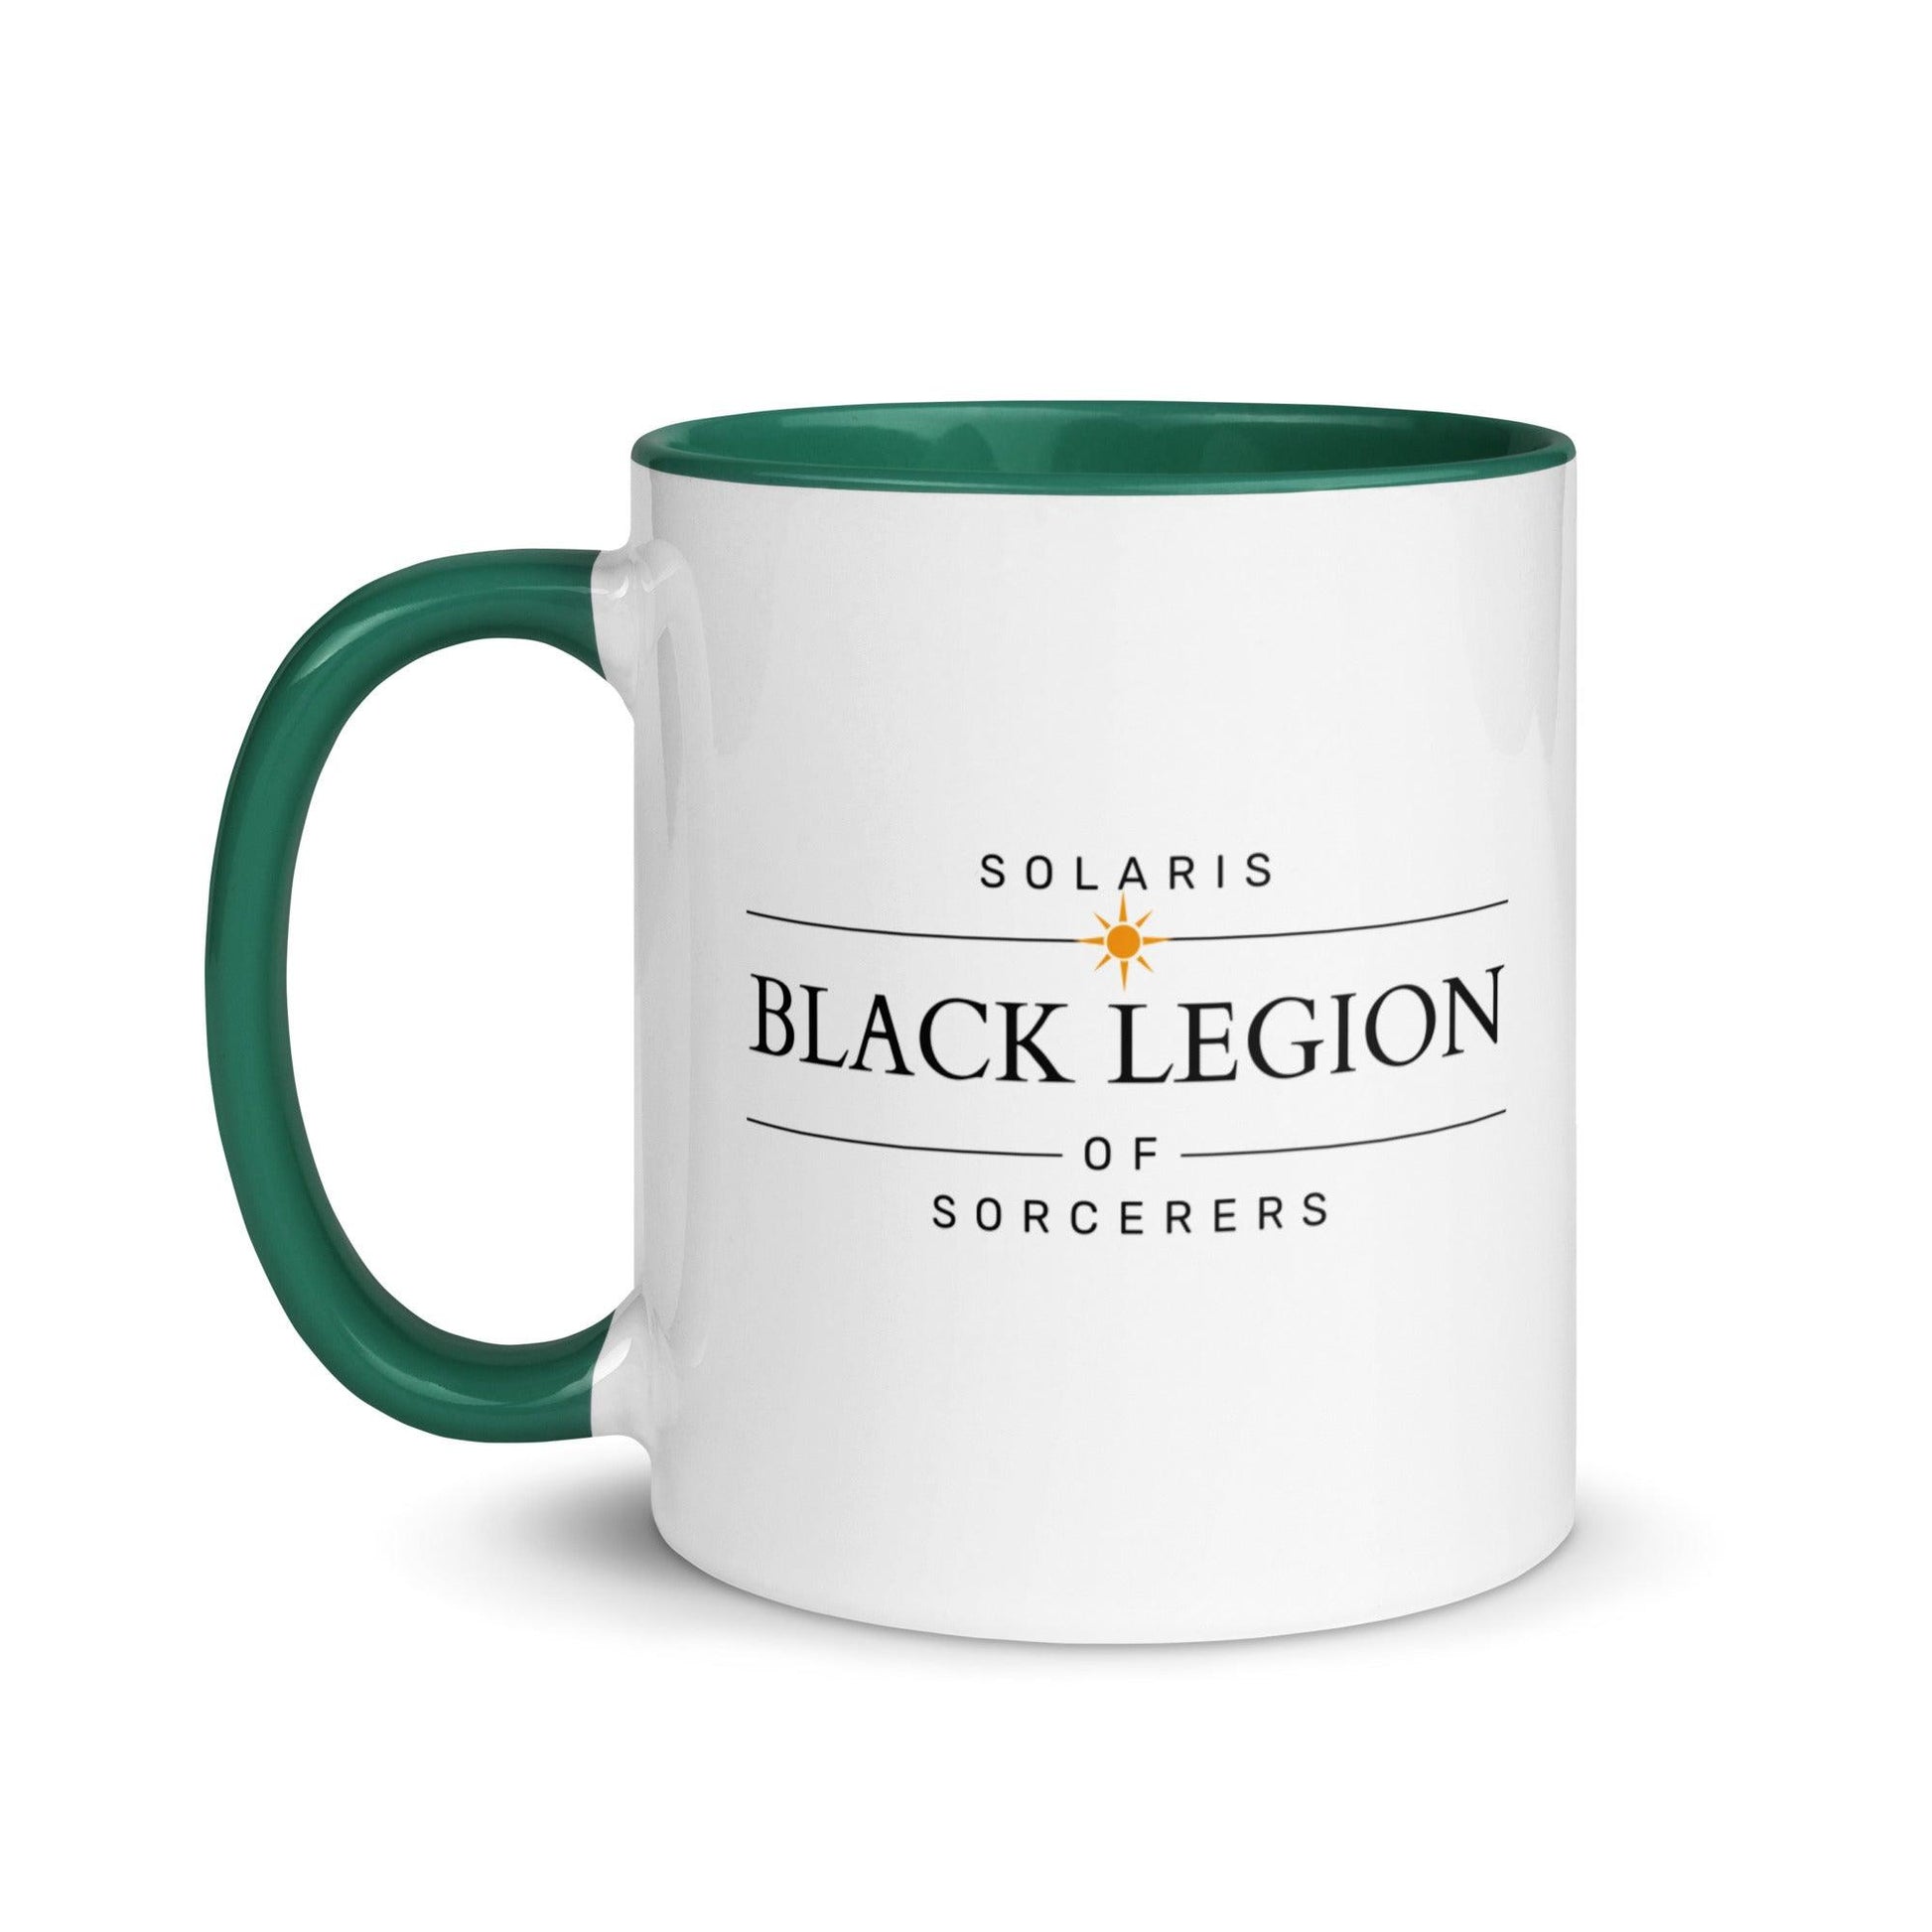 Black Legion Sorcerer Coffee Mug - The Bean Workshop - air awakens, ceramic mug, elise kova, mug